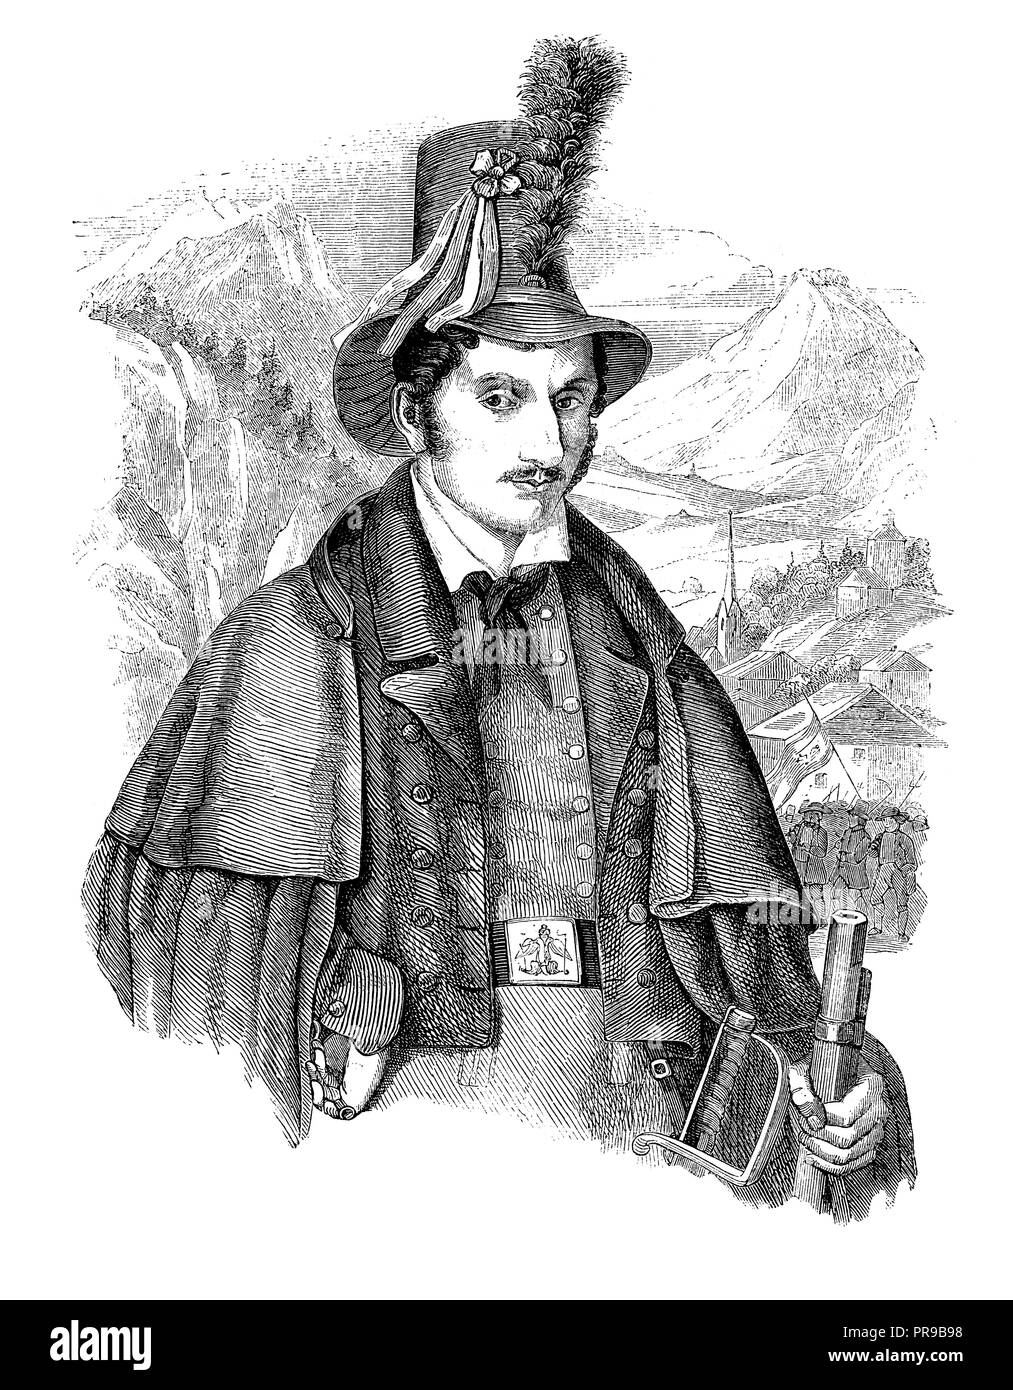 Xix secolo illustrazione di un ritratto di Josef Speckbacher (1767 - 1820) che fu una figura di primo piano nella ribellione del Tirolo contro Napoleone. Af Foto Stock